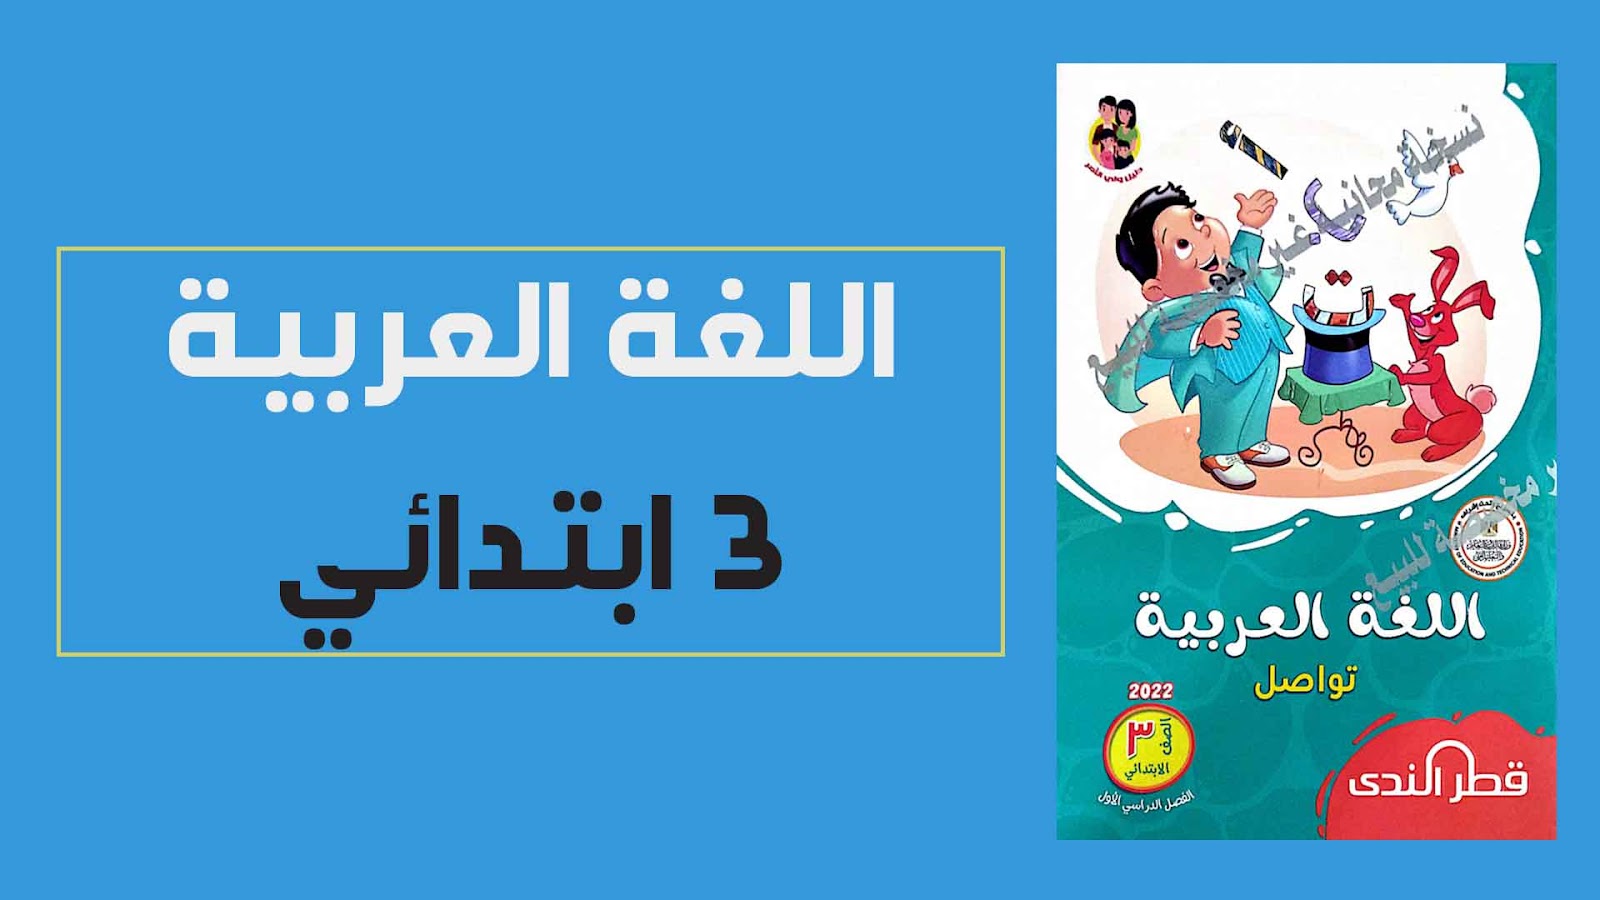 تحميل كتاب قطر الندى فى اللغة العربية للصف الثالث الابتدائي الترم الاول 2022 (النسخة الجديدة)